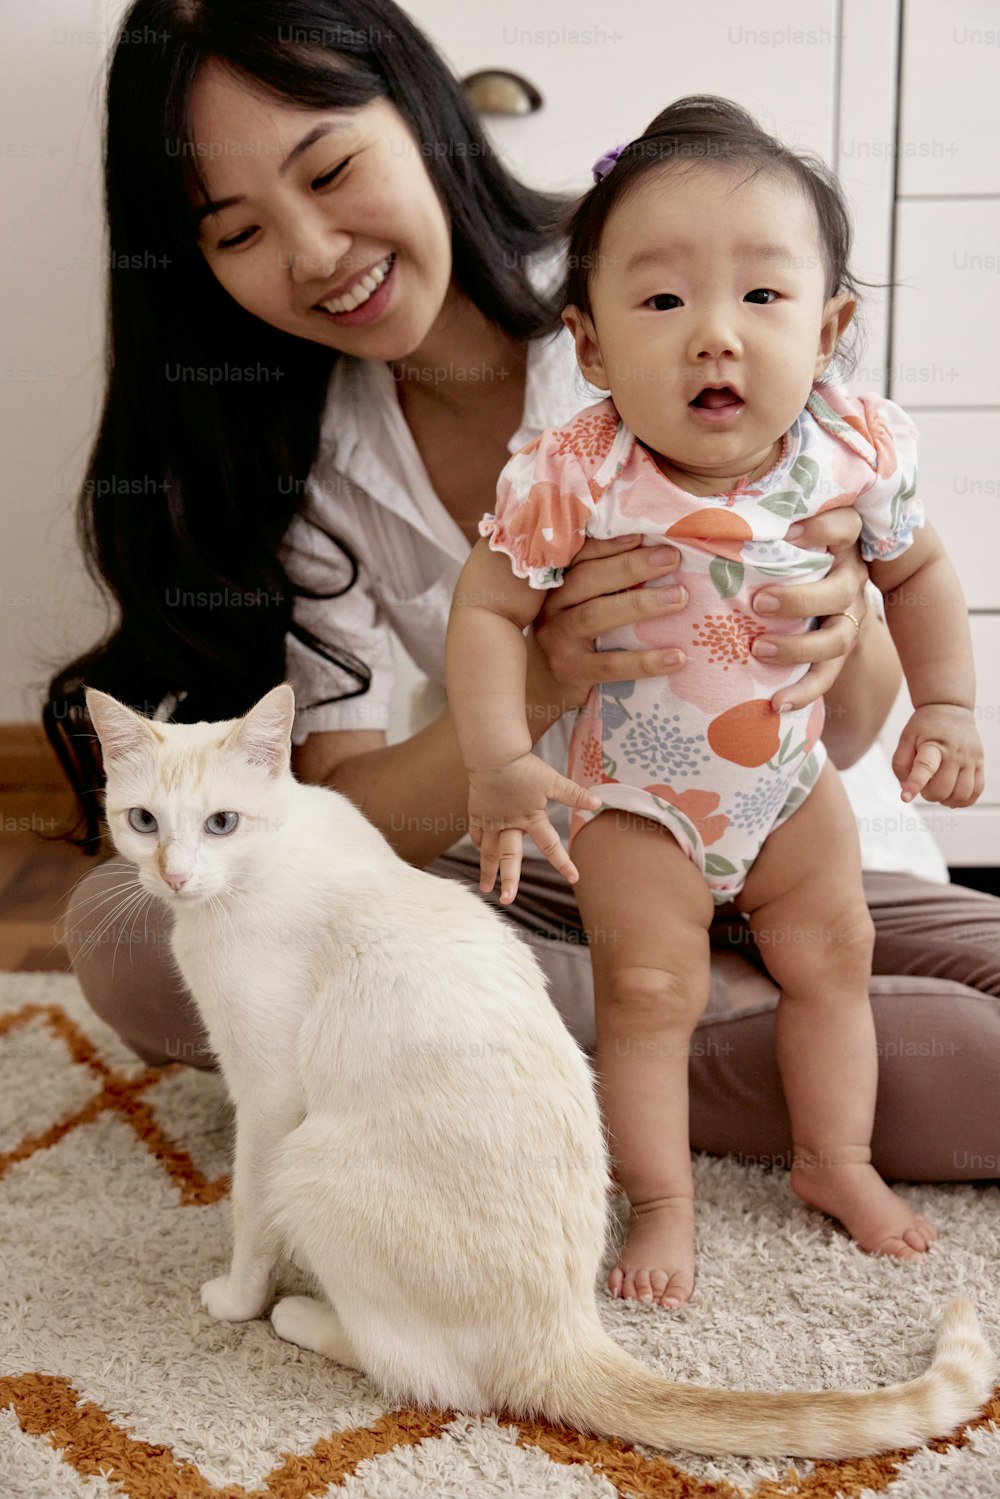 Una mujer sosteniendo a un bebé y un gato blanco